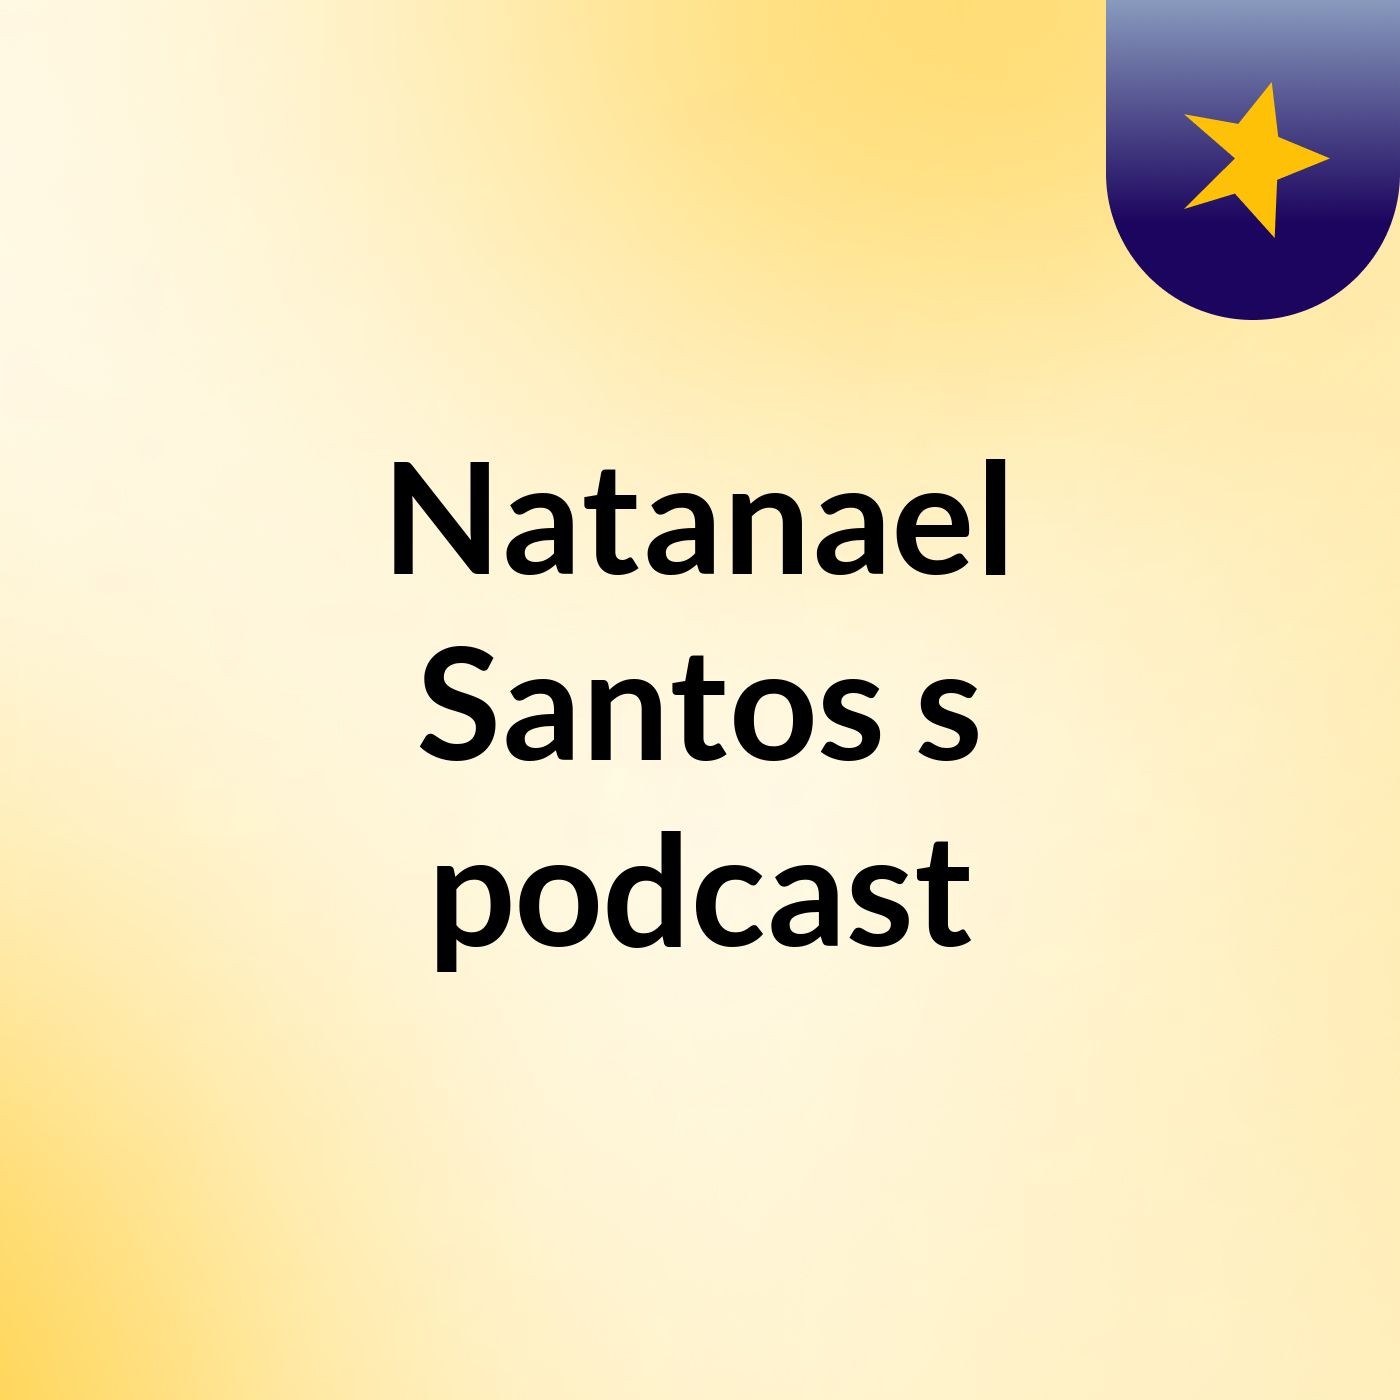 Natanael Santos's podcast